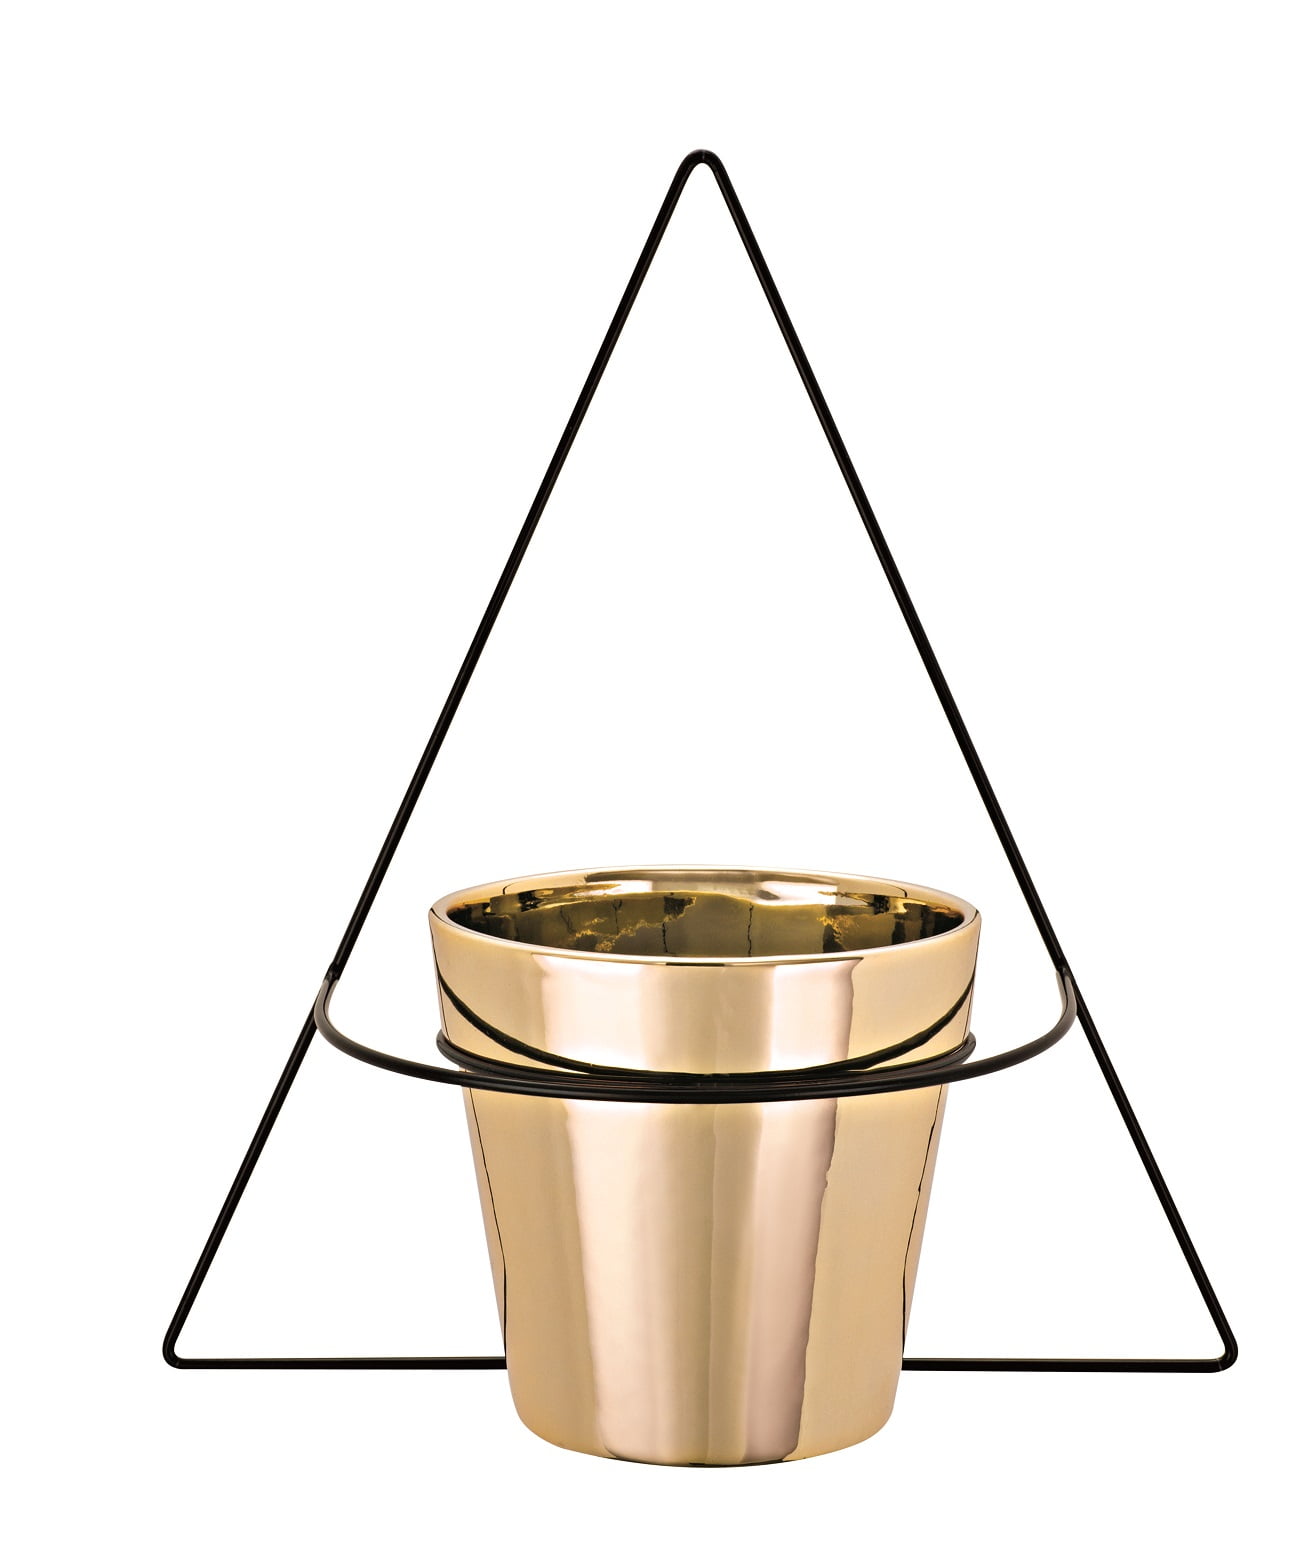 Triângulo - Vaso com Suporte de Parede